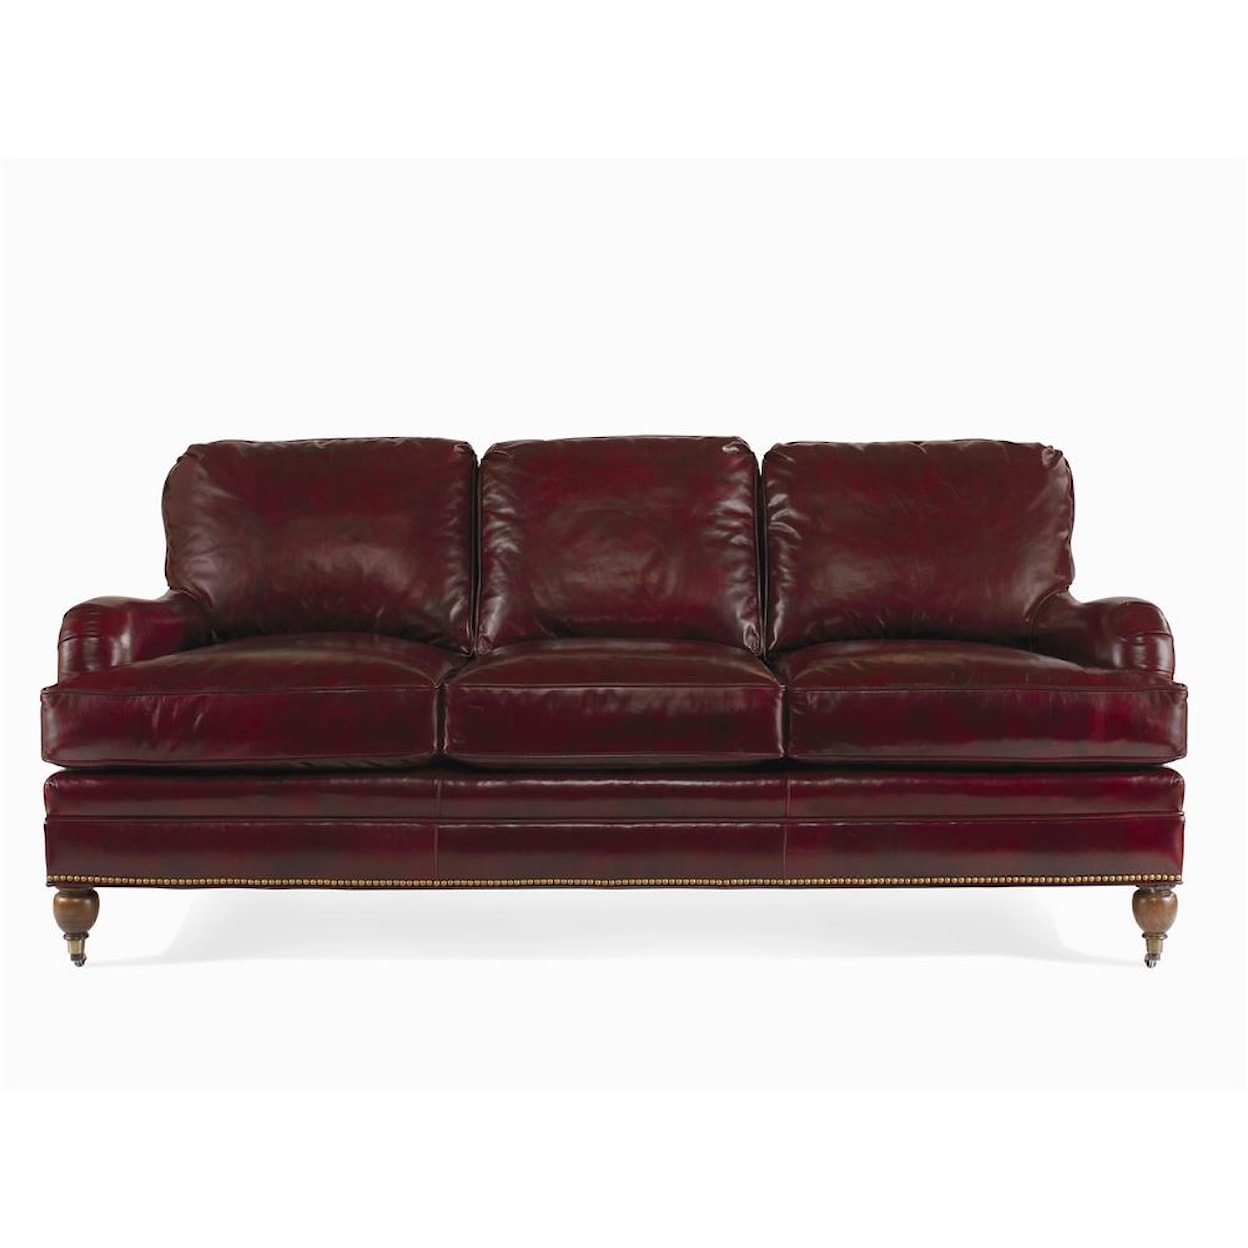 Century Century Leather Essex Sofa